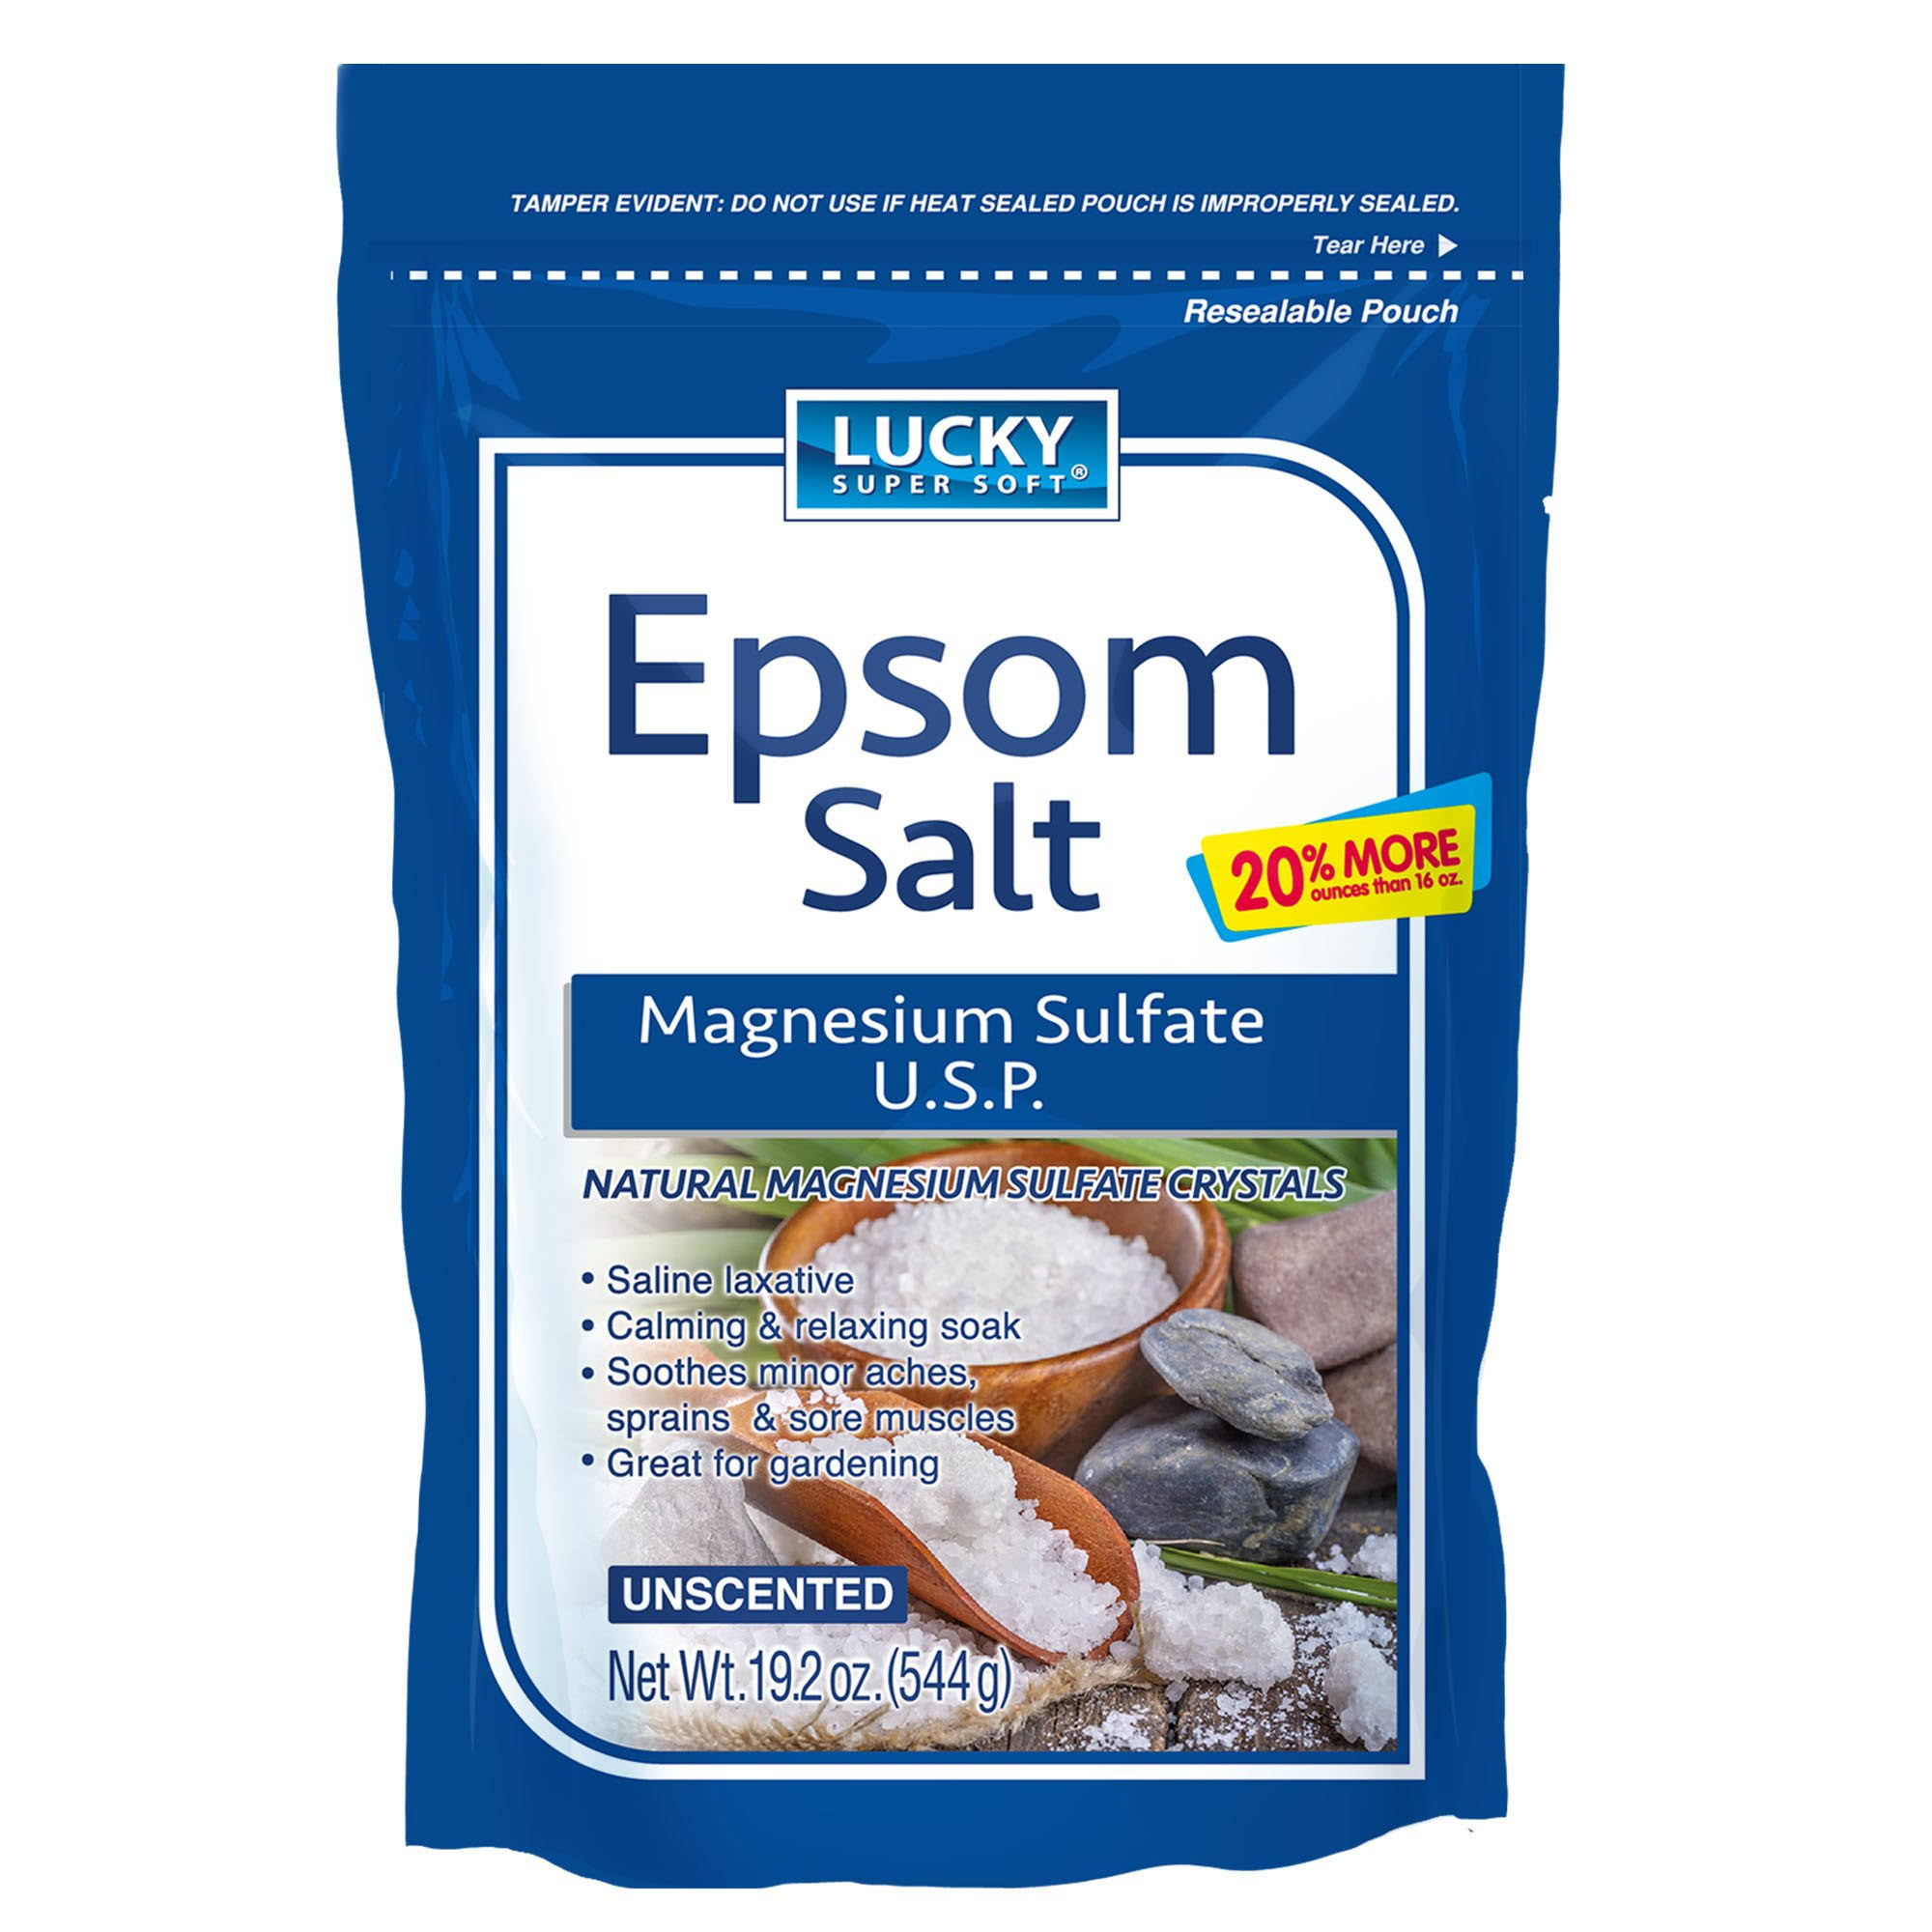 Lucky Super Soft Magnesium Sulfate U.S.P. Epsom Salt, 19.2 Ounce